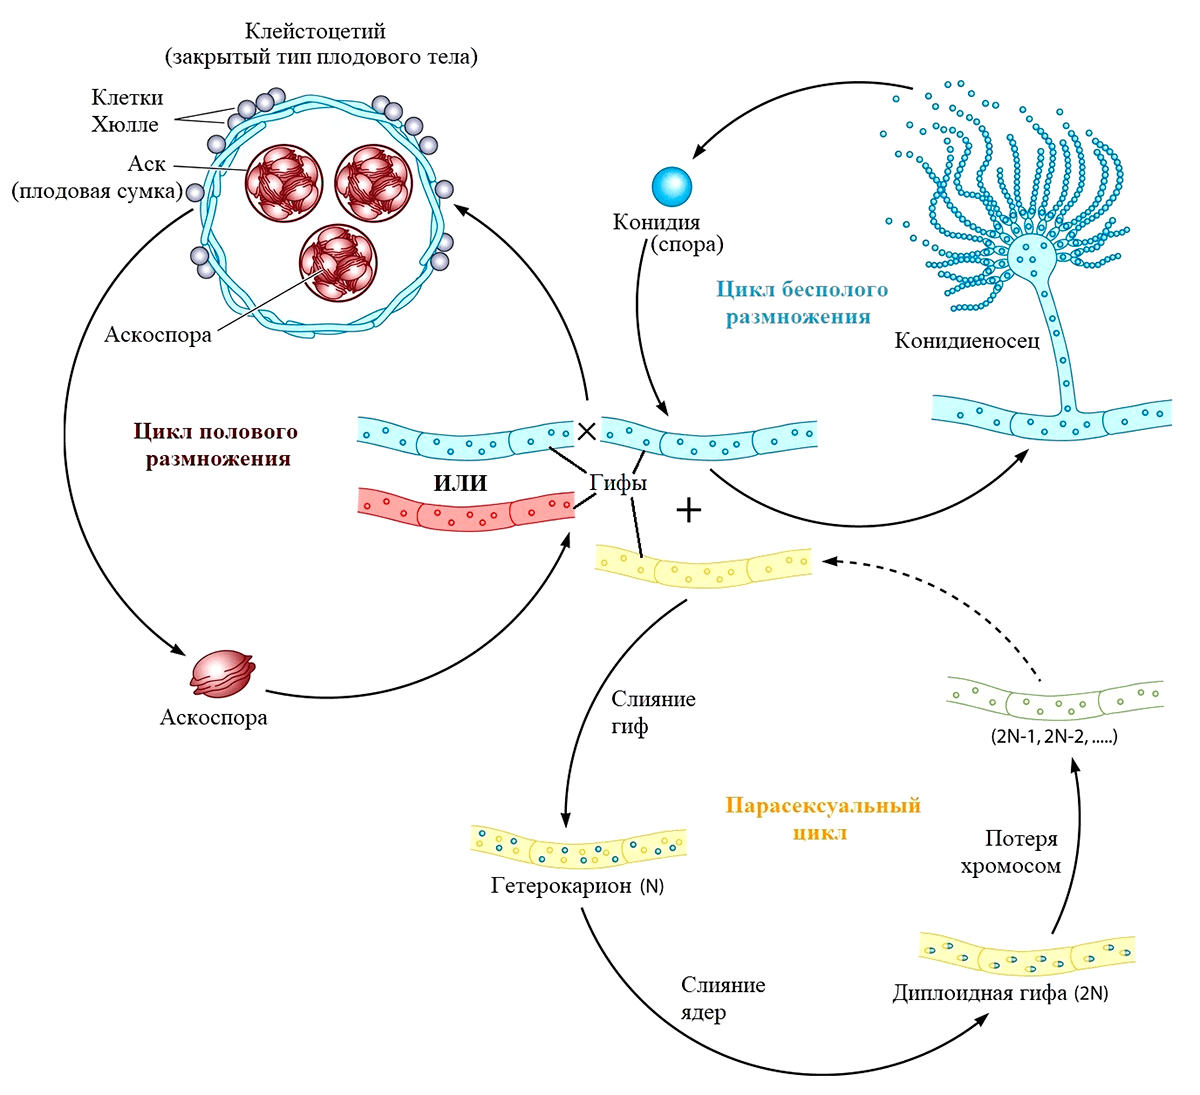 Половой, бесполый и парасексуальный циклы размножения аспергиллов